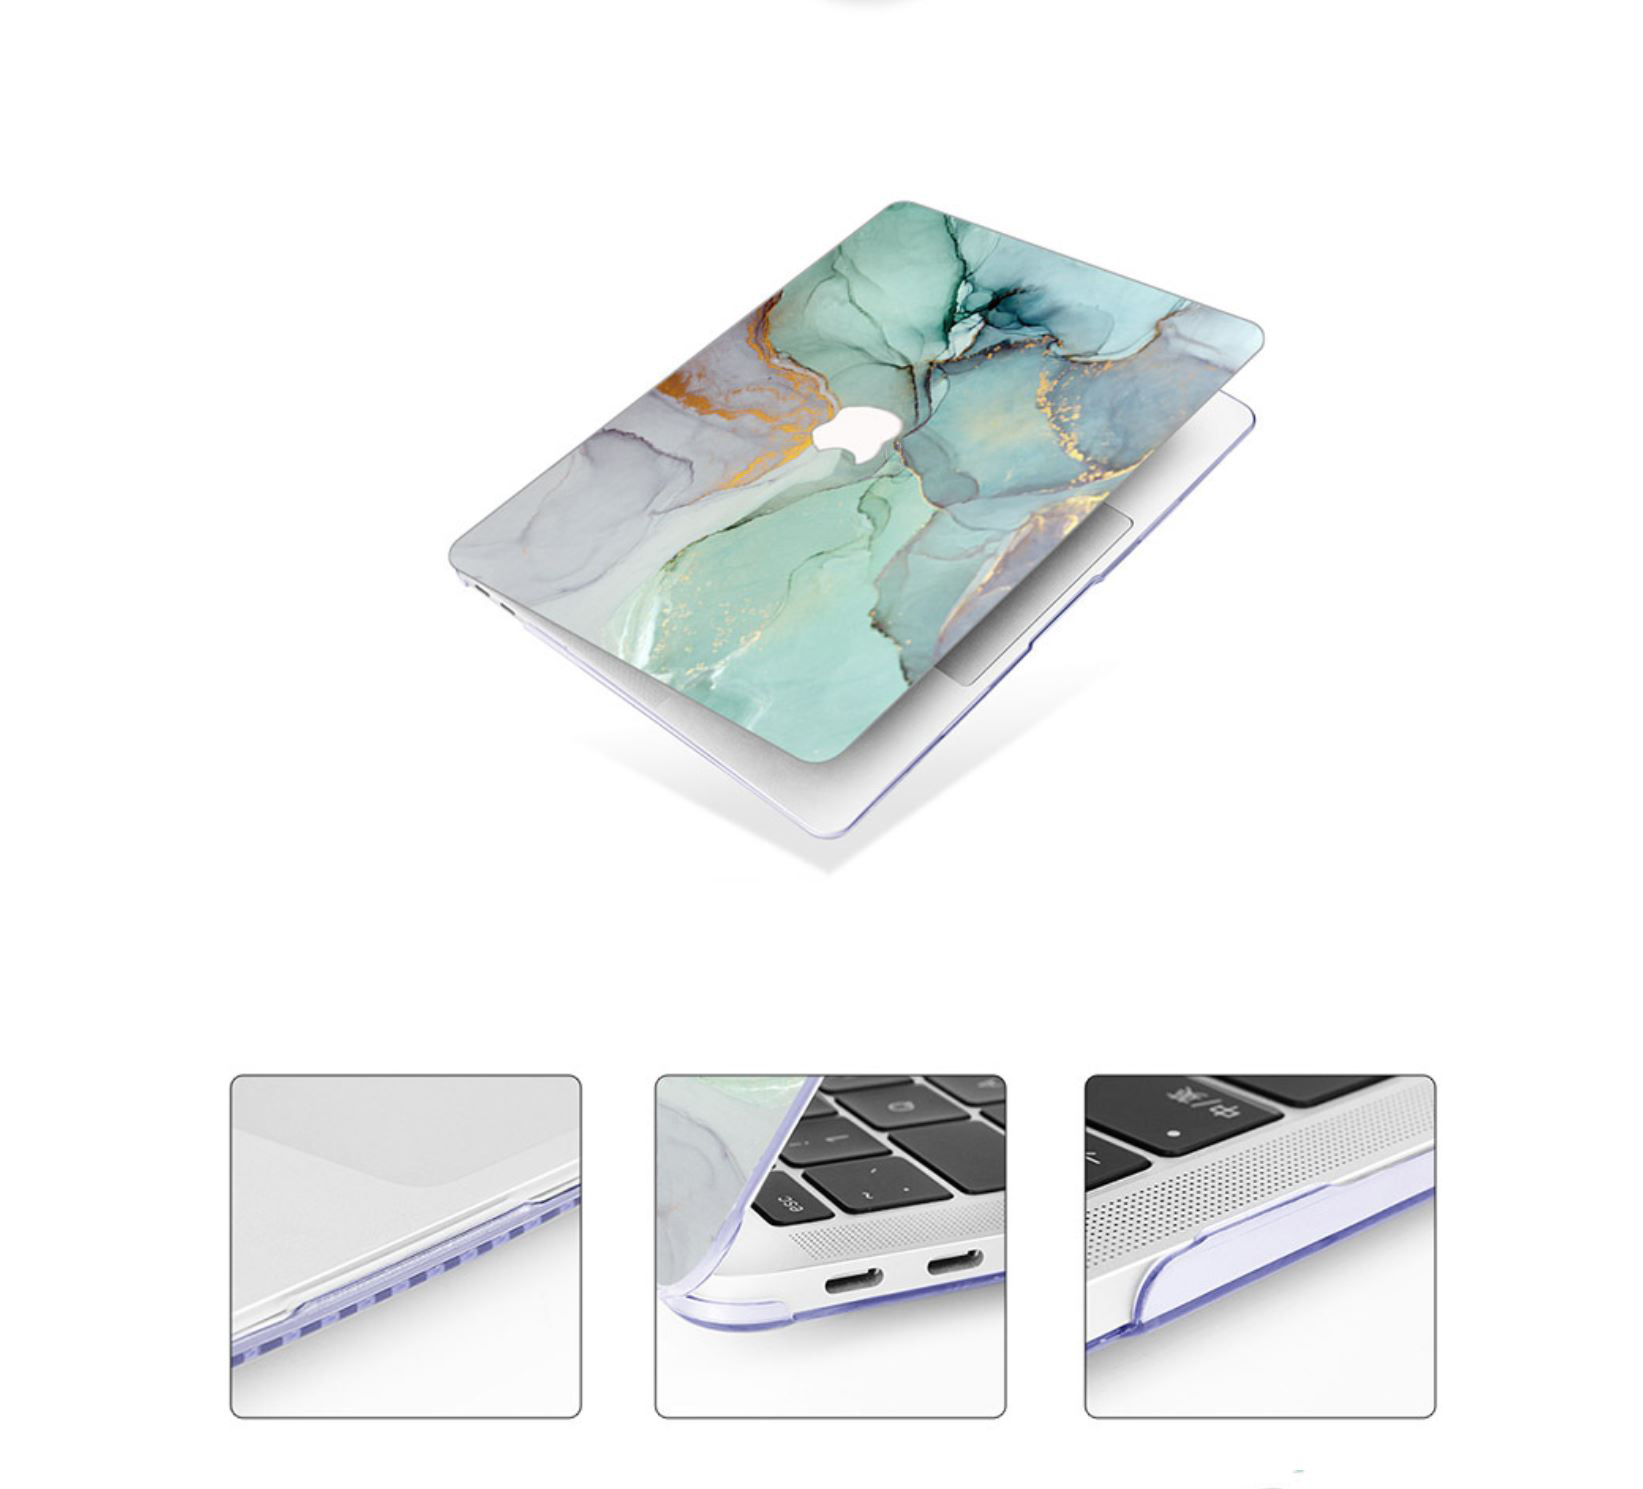 Case ốp nhựa ABS bảo vệ dành cho macbook đủ dòng siêu mỏng nhẹ không nóng máy hoạ tiết đá cẩm thạch màu xanh ngọc kèm tấm phủ bàn phím silicon